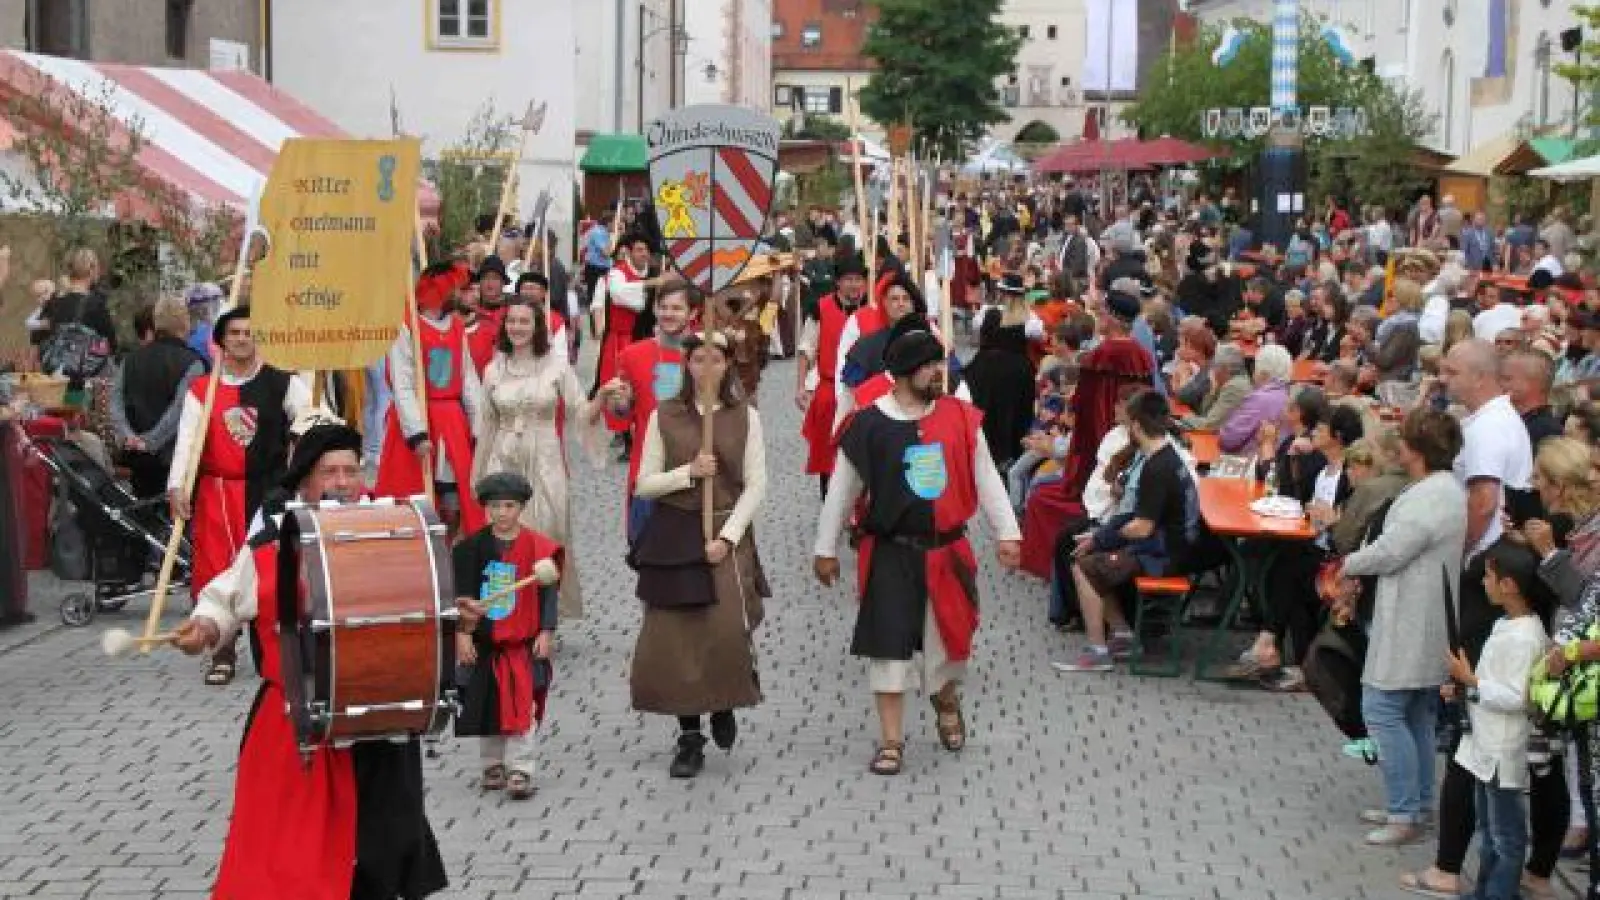 Das letzte Historische Marktfest wurde im Jahr 2017 in Pöttmes gefeiert.